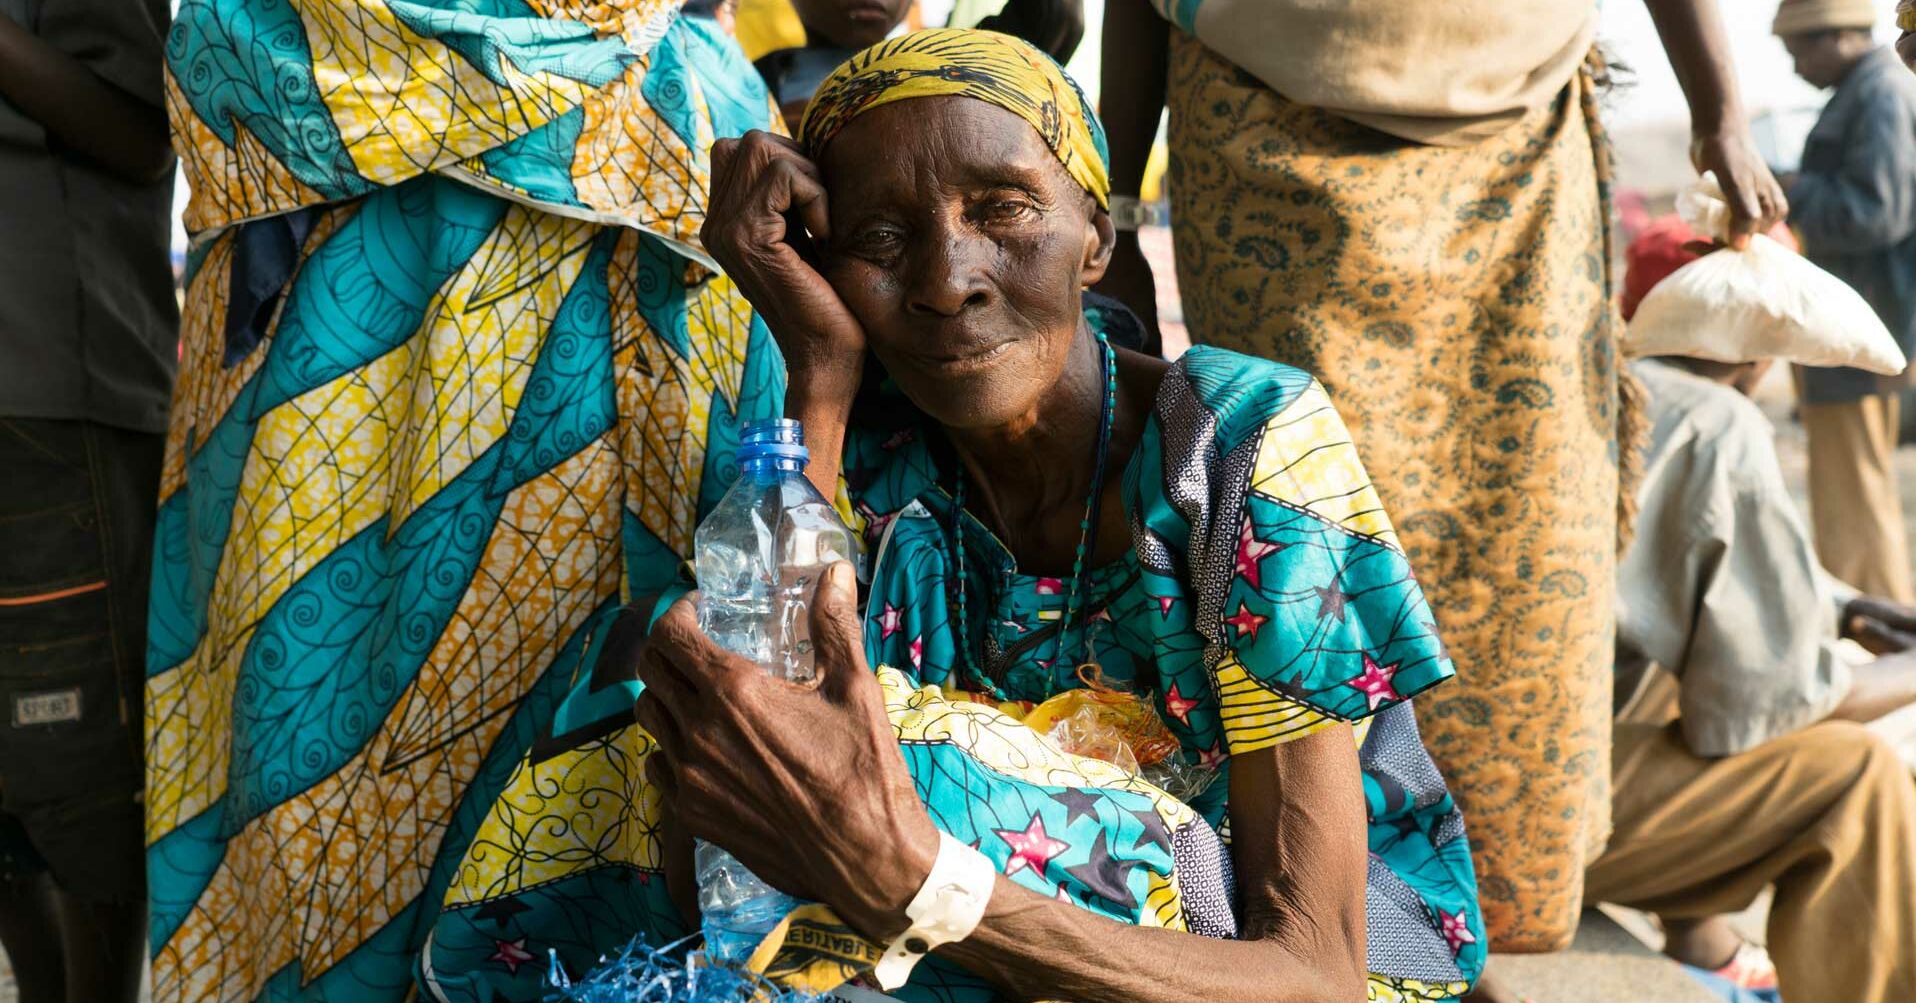 Alte Frau mit Wasserflasche in der Hand, Blick in die Kamera RF2152920-1920x1080.jpg